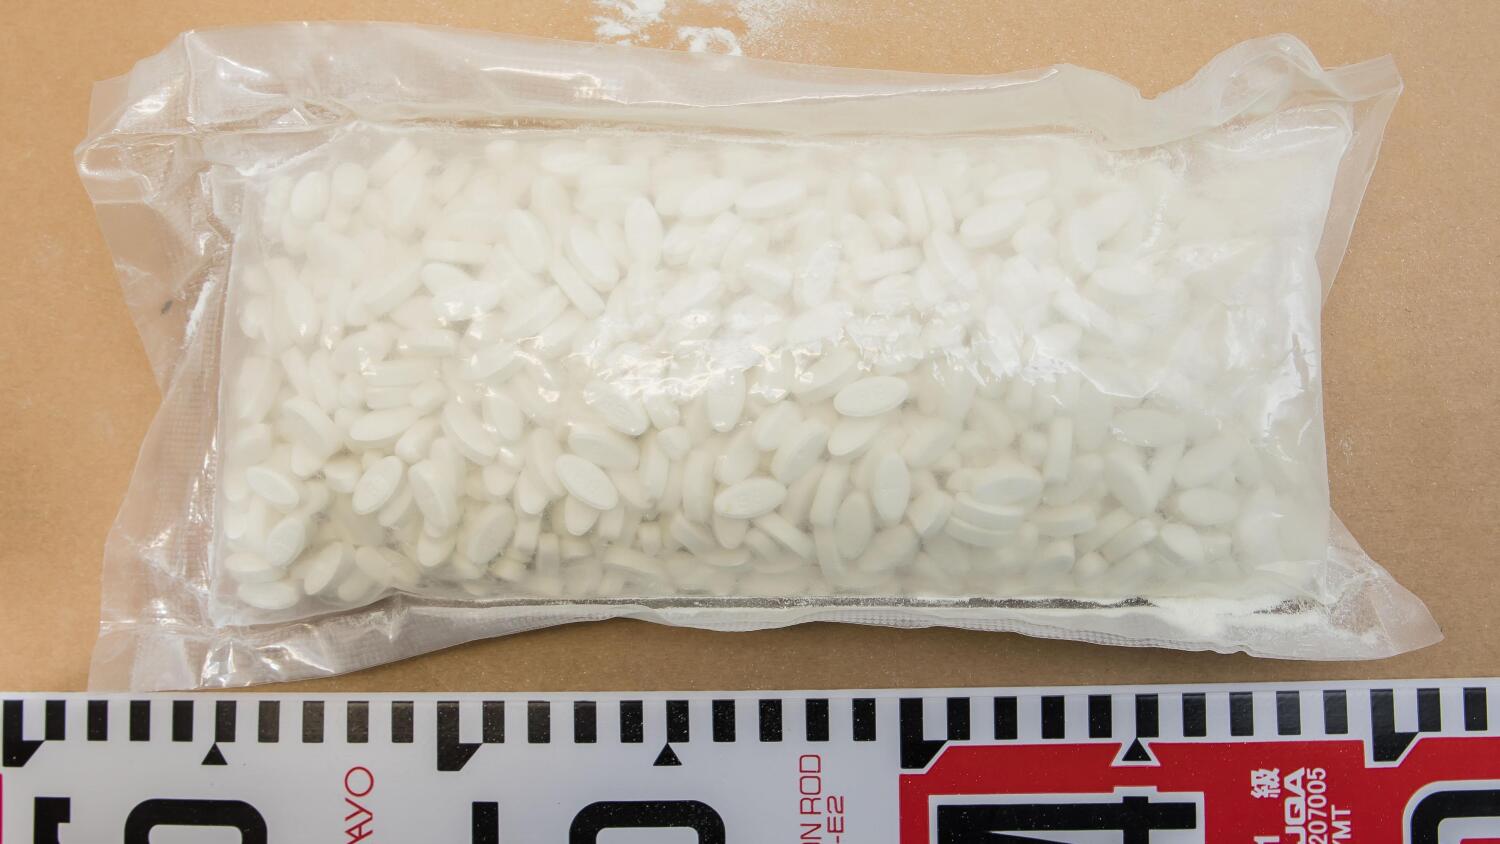 yksi tabletti voi johtaa kuolemaan - poliisi takavarikoi erittäin vaarallista huumetta